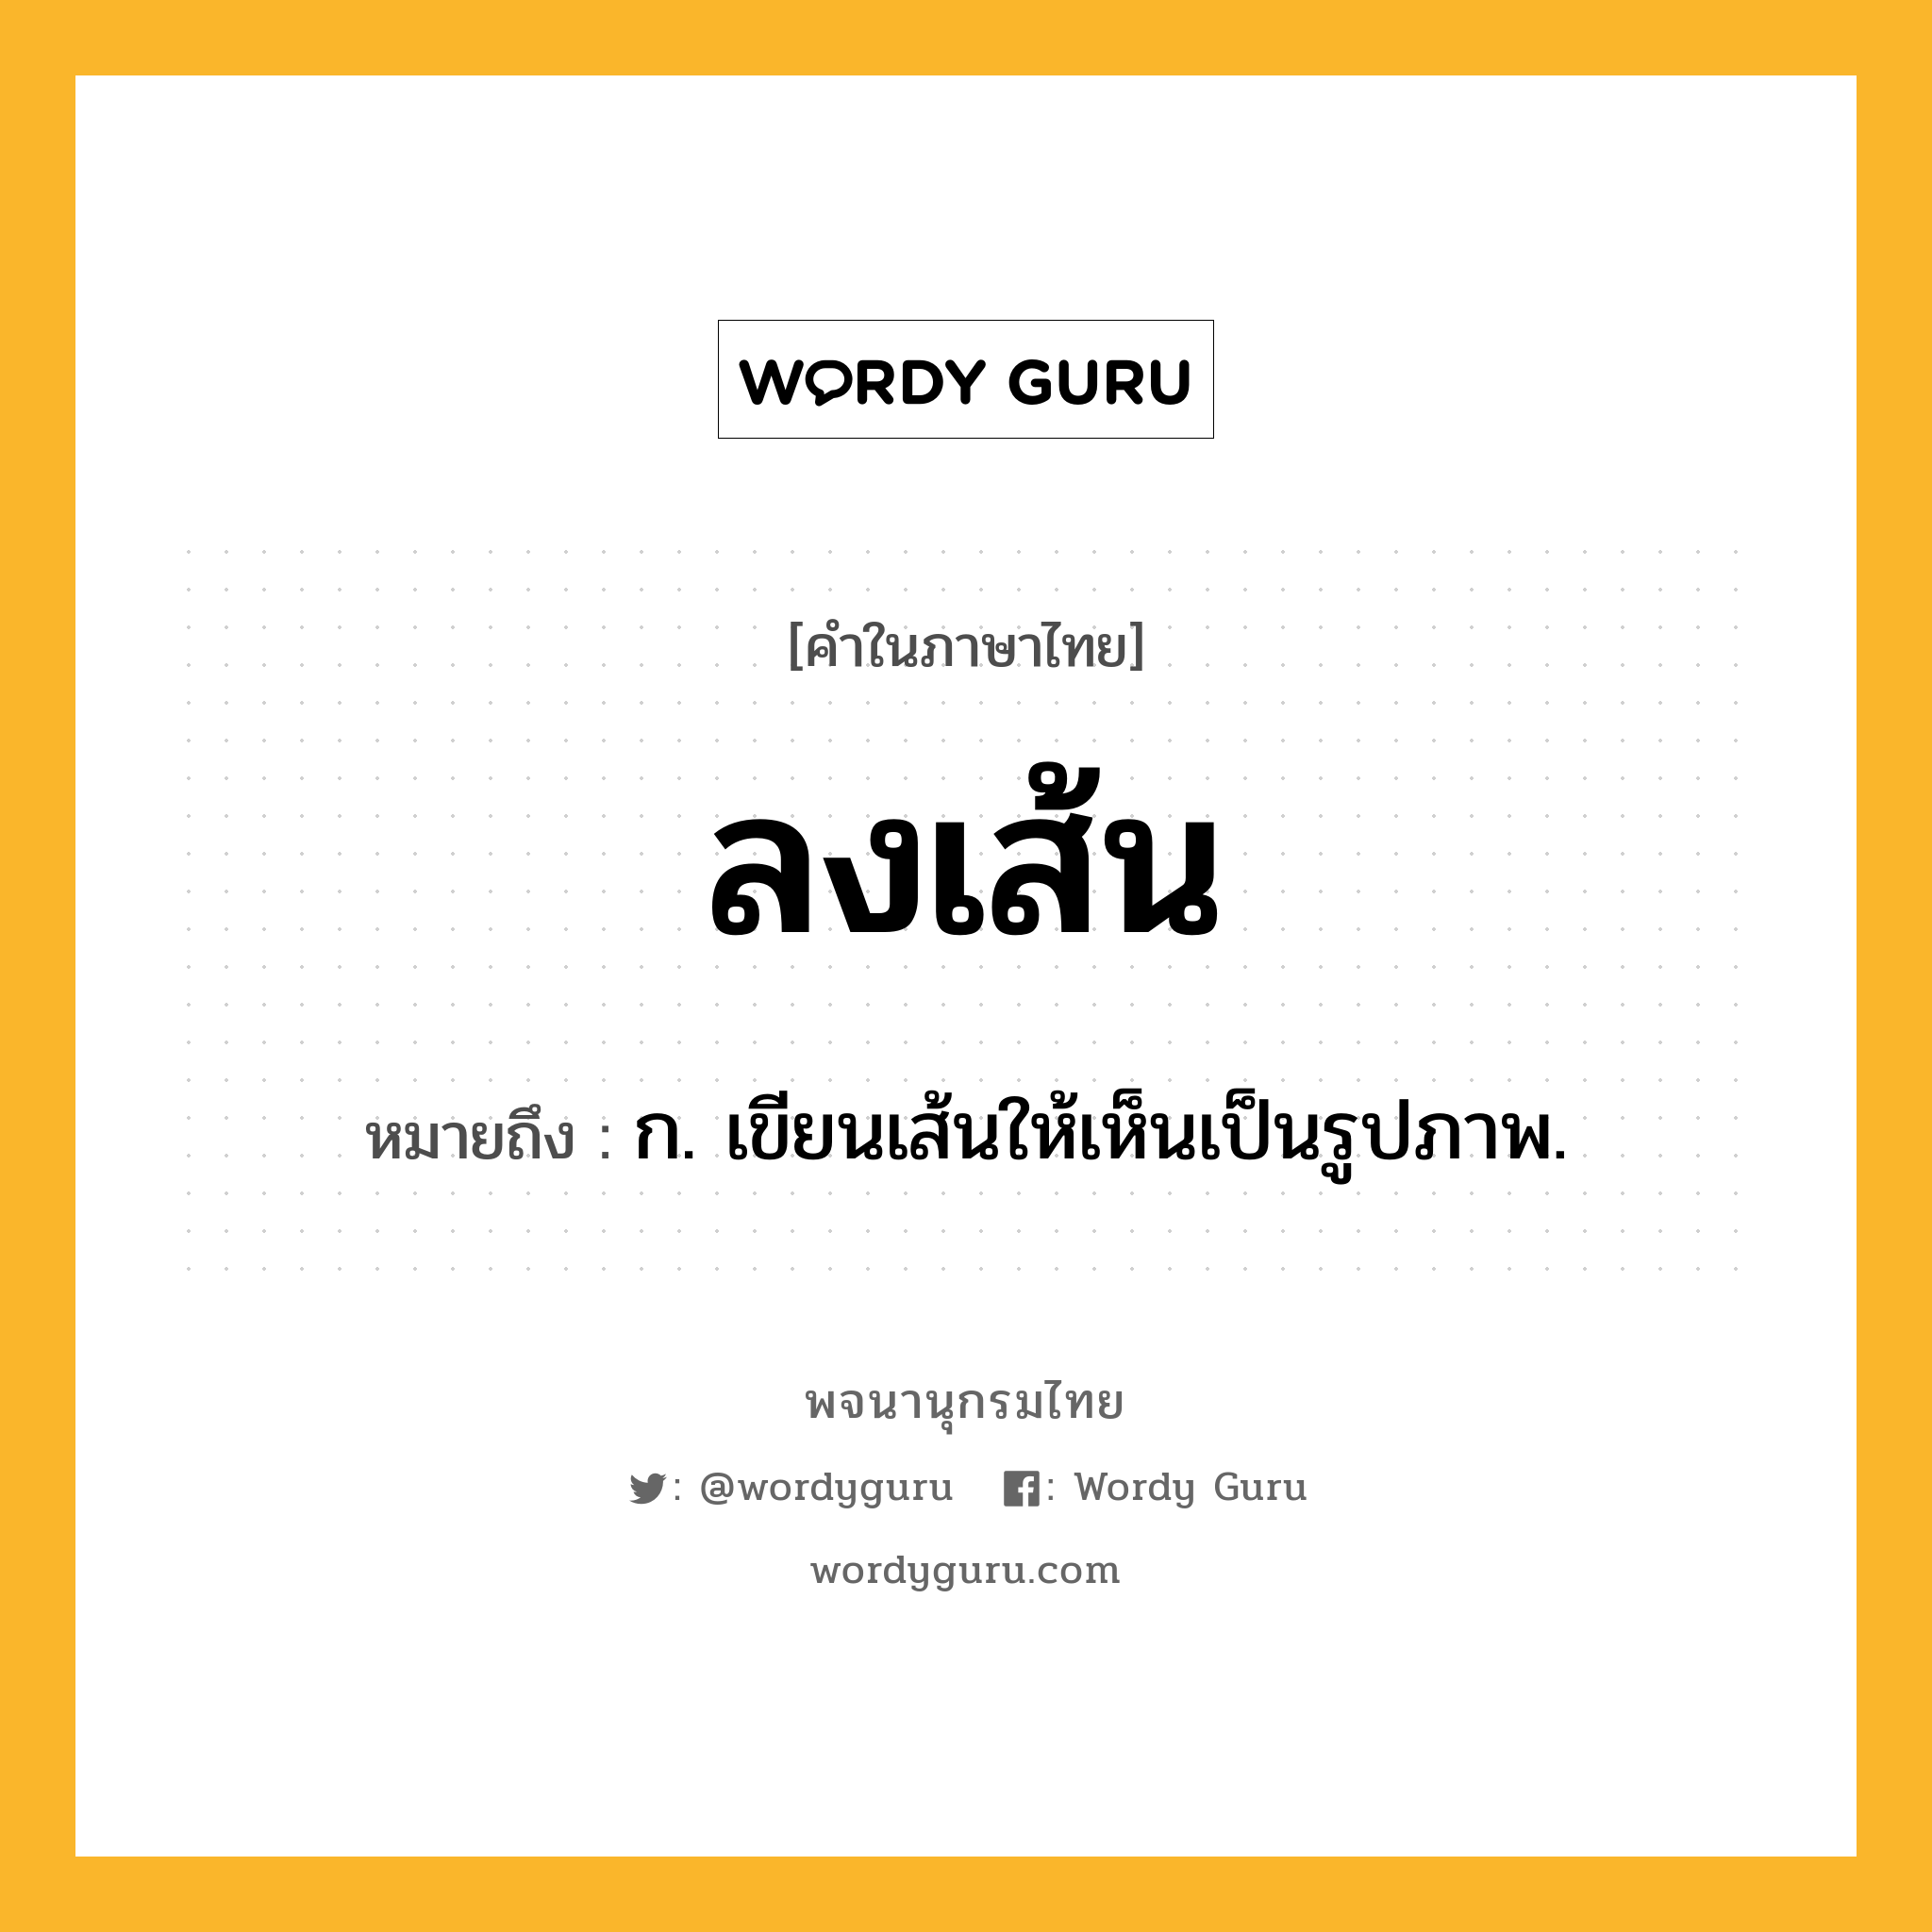 ลงเส้น ความหมาย หมายถึงอะไร?, คำในภาษาไทย ลงเส้น หมายถึง ก. เขียนเส้นให้เห็นเป็นรูปภาพ.